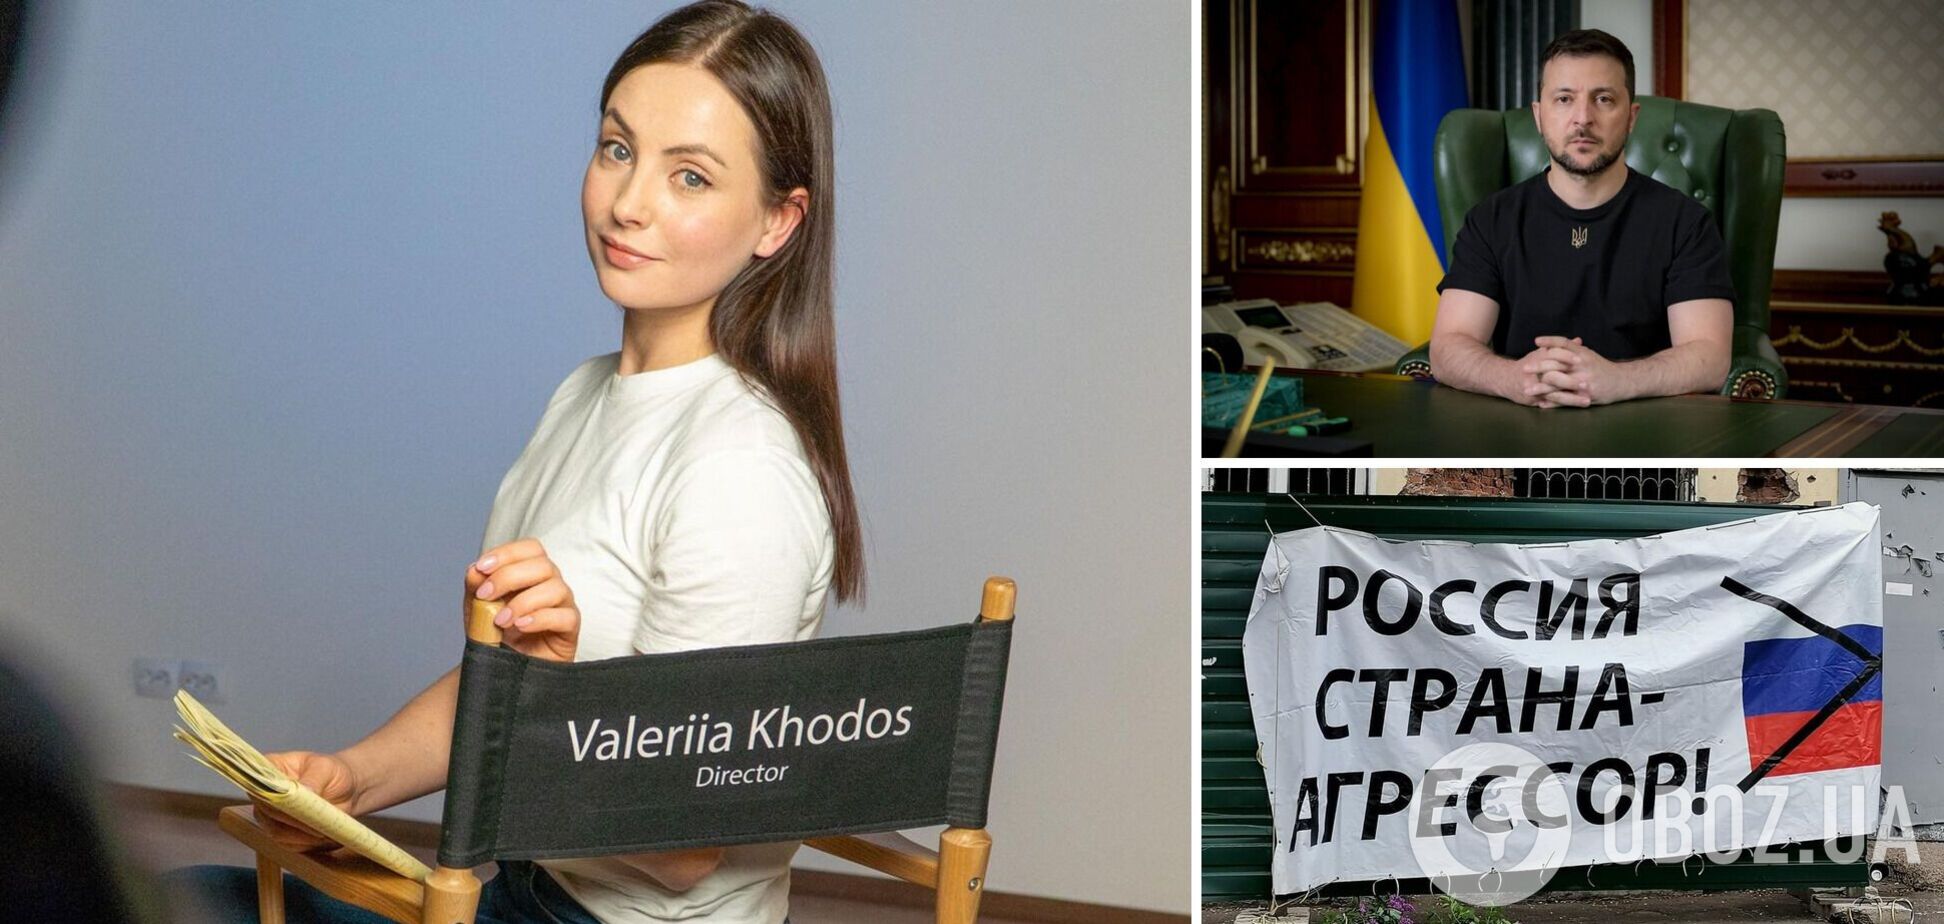 'Маленькая победа': Зеленский рассмотрел петицию актрисы Ходос о запрете российских артистов в Украине